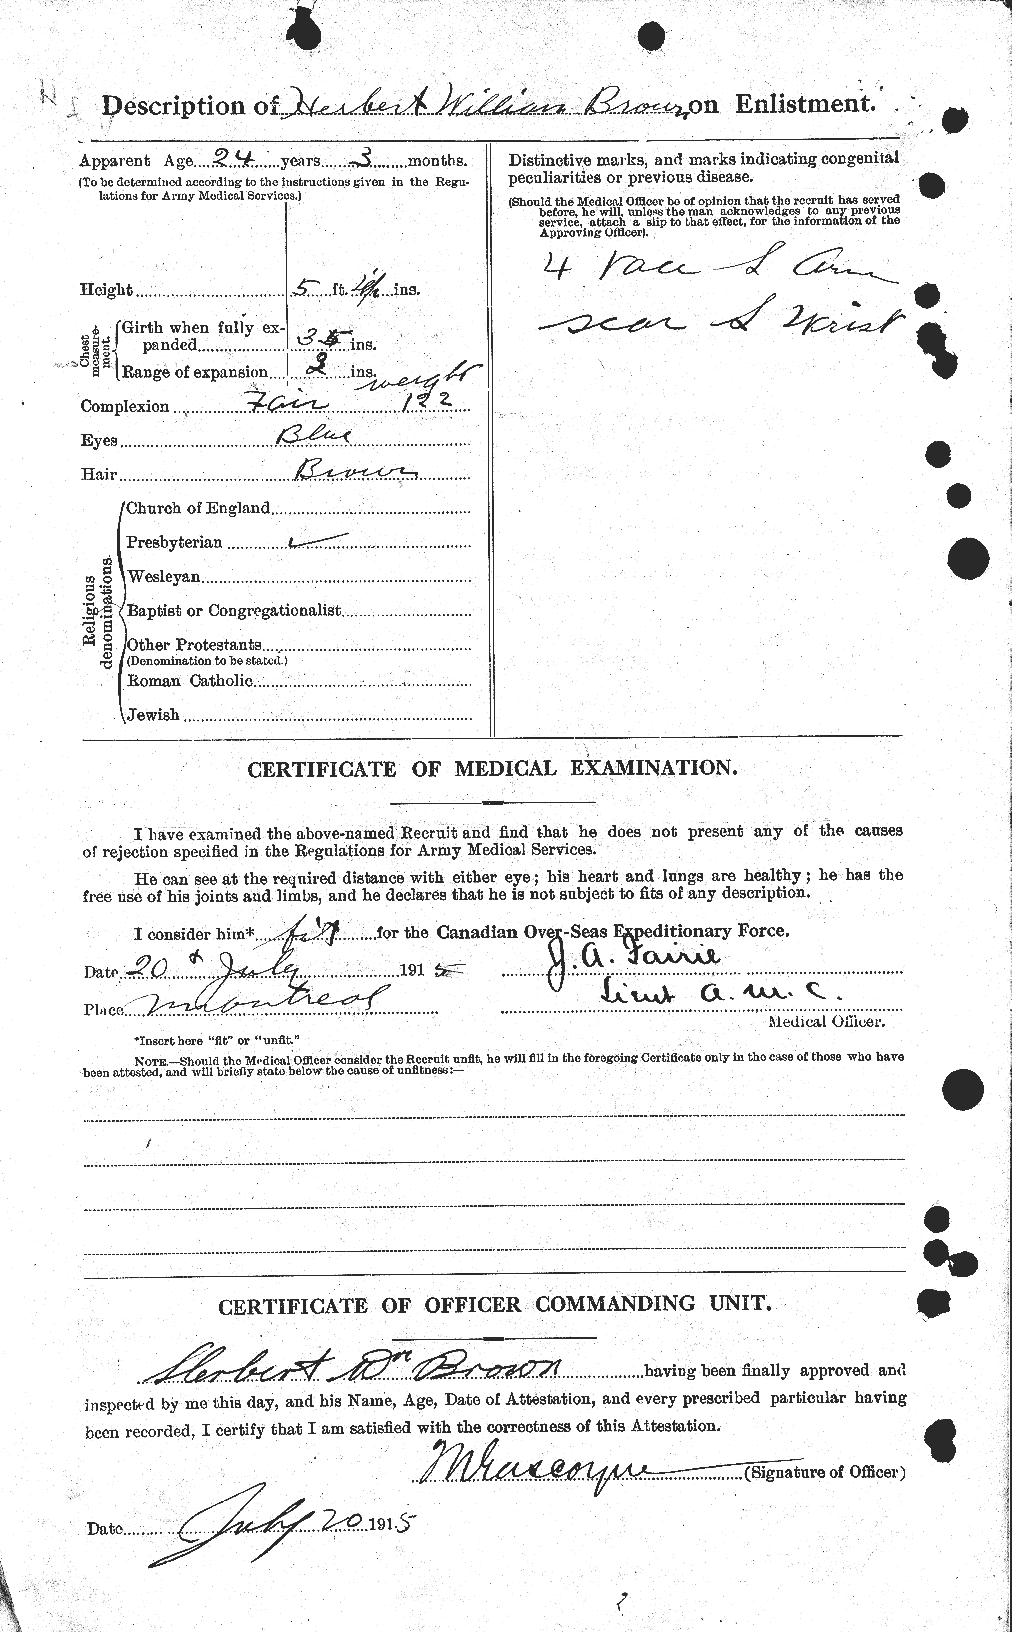 Dossiers du Personnel de la Première Guerre mondiale - CEC 265594b